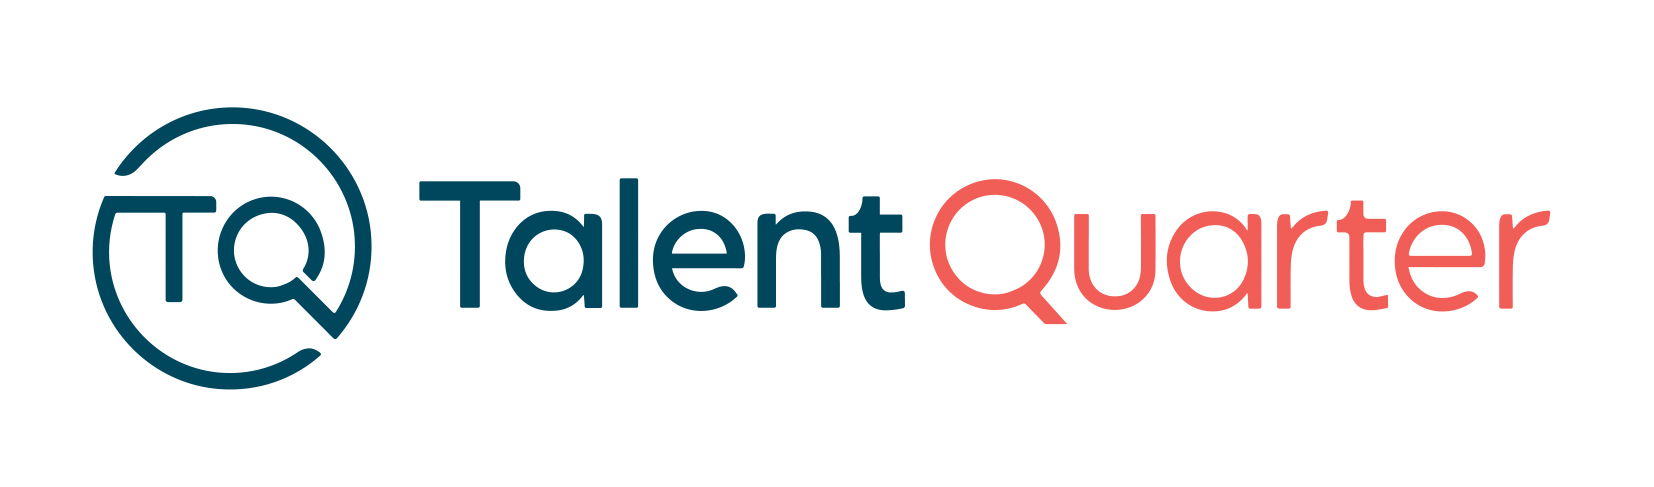 talent quarter logo